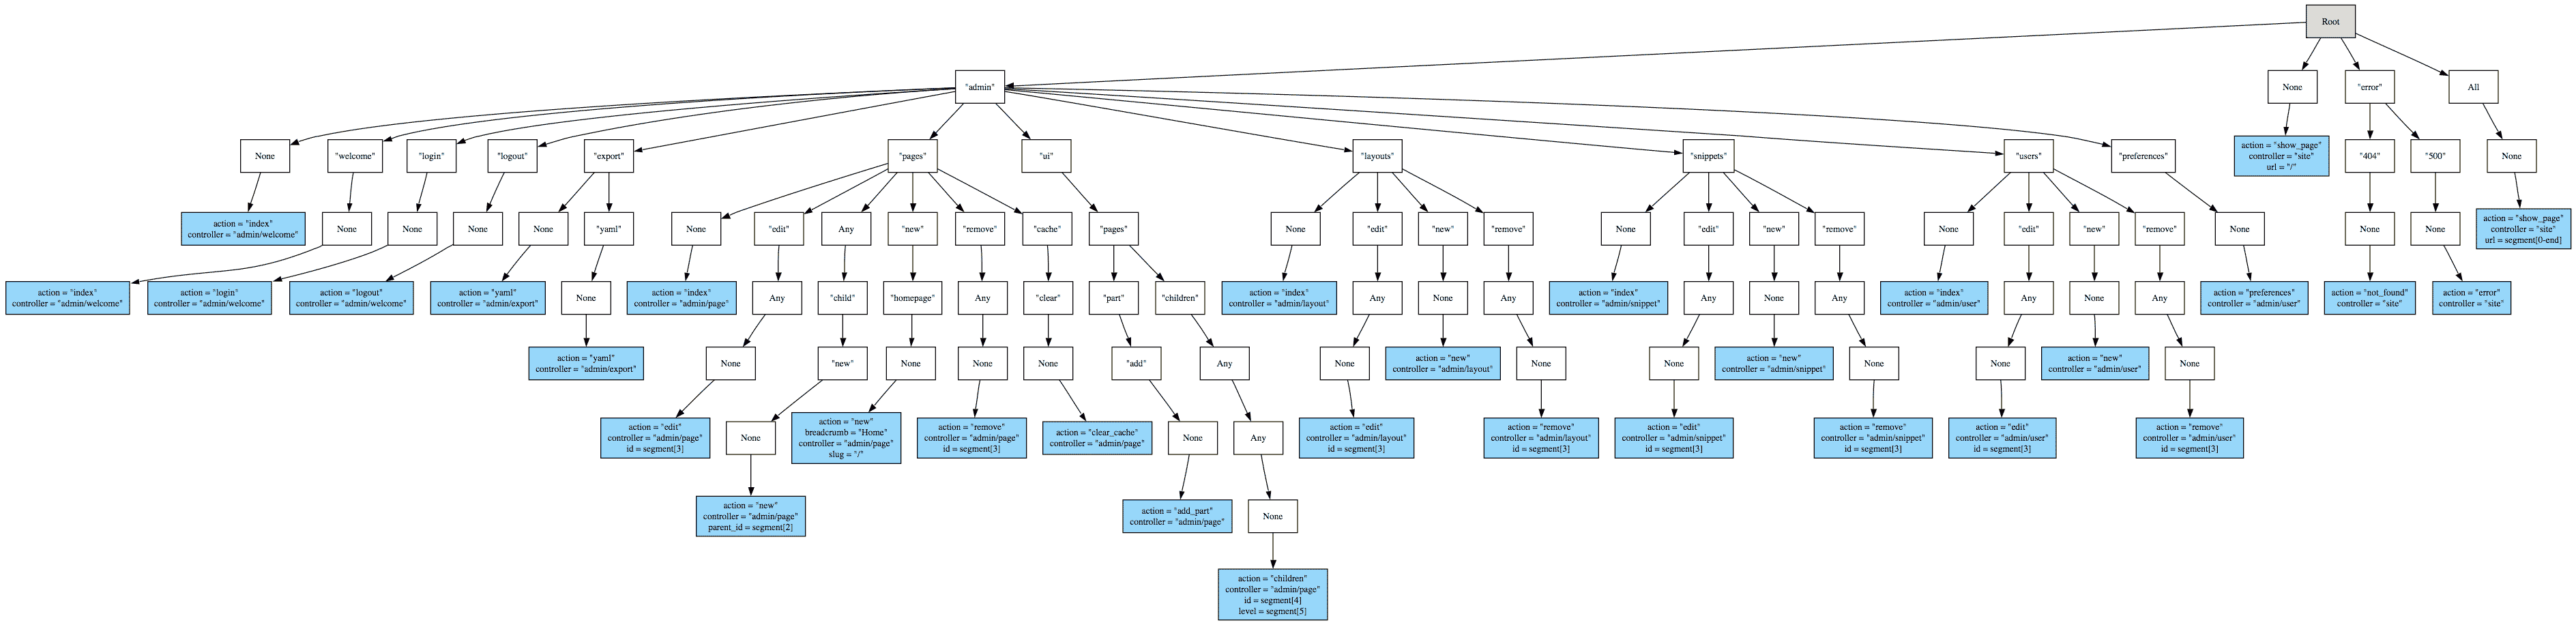 routing tree diagram